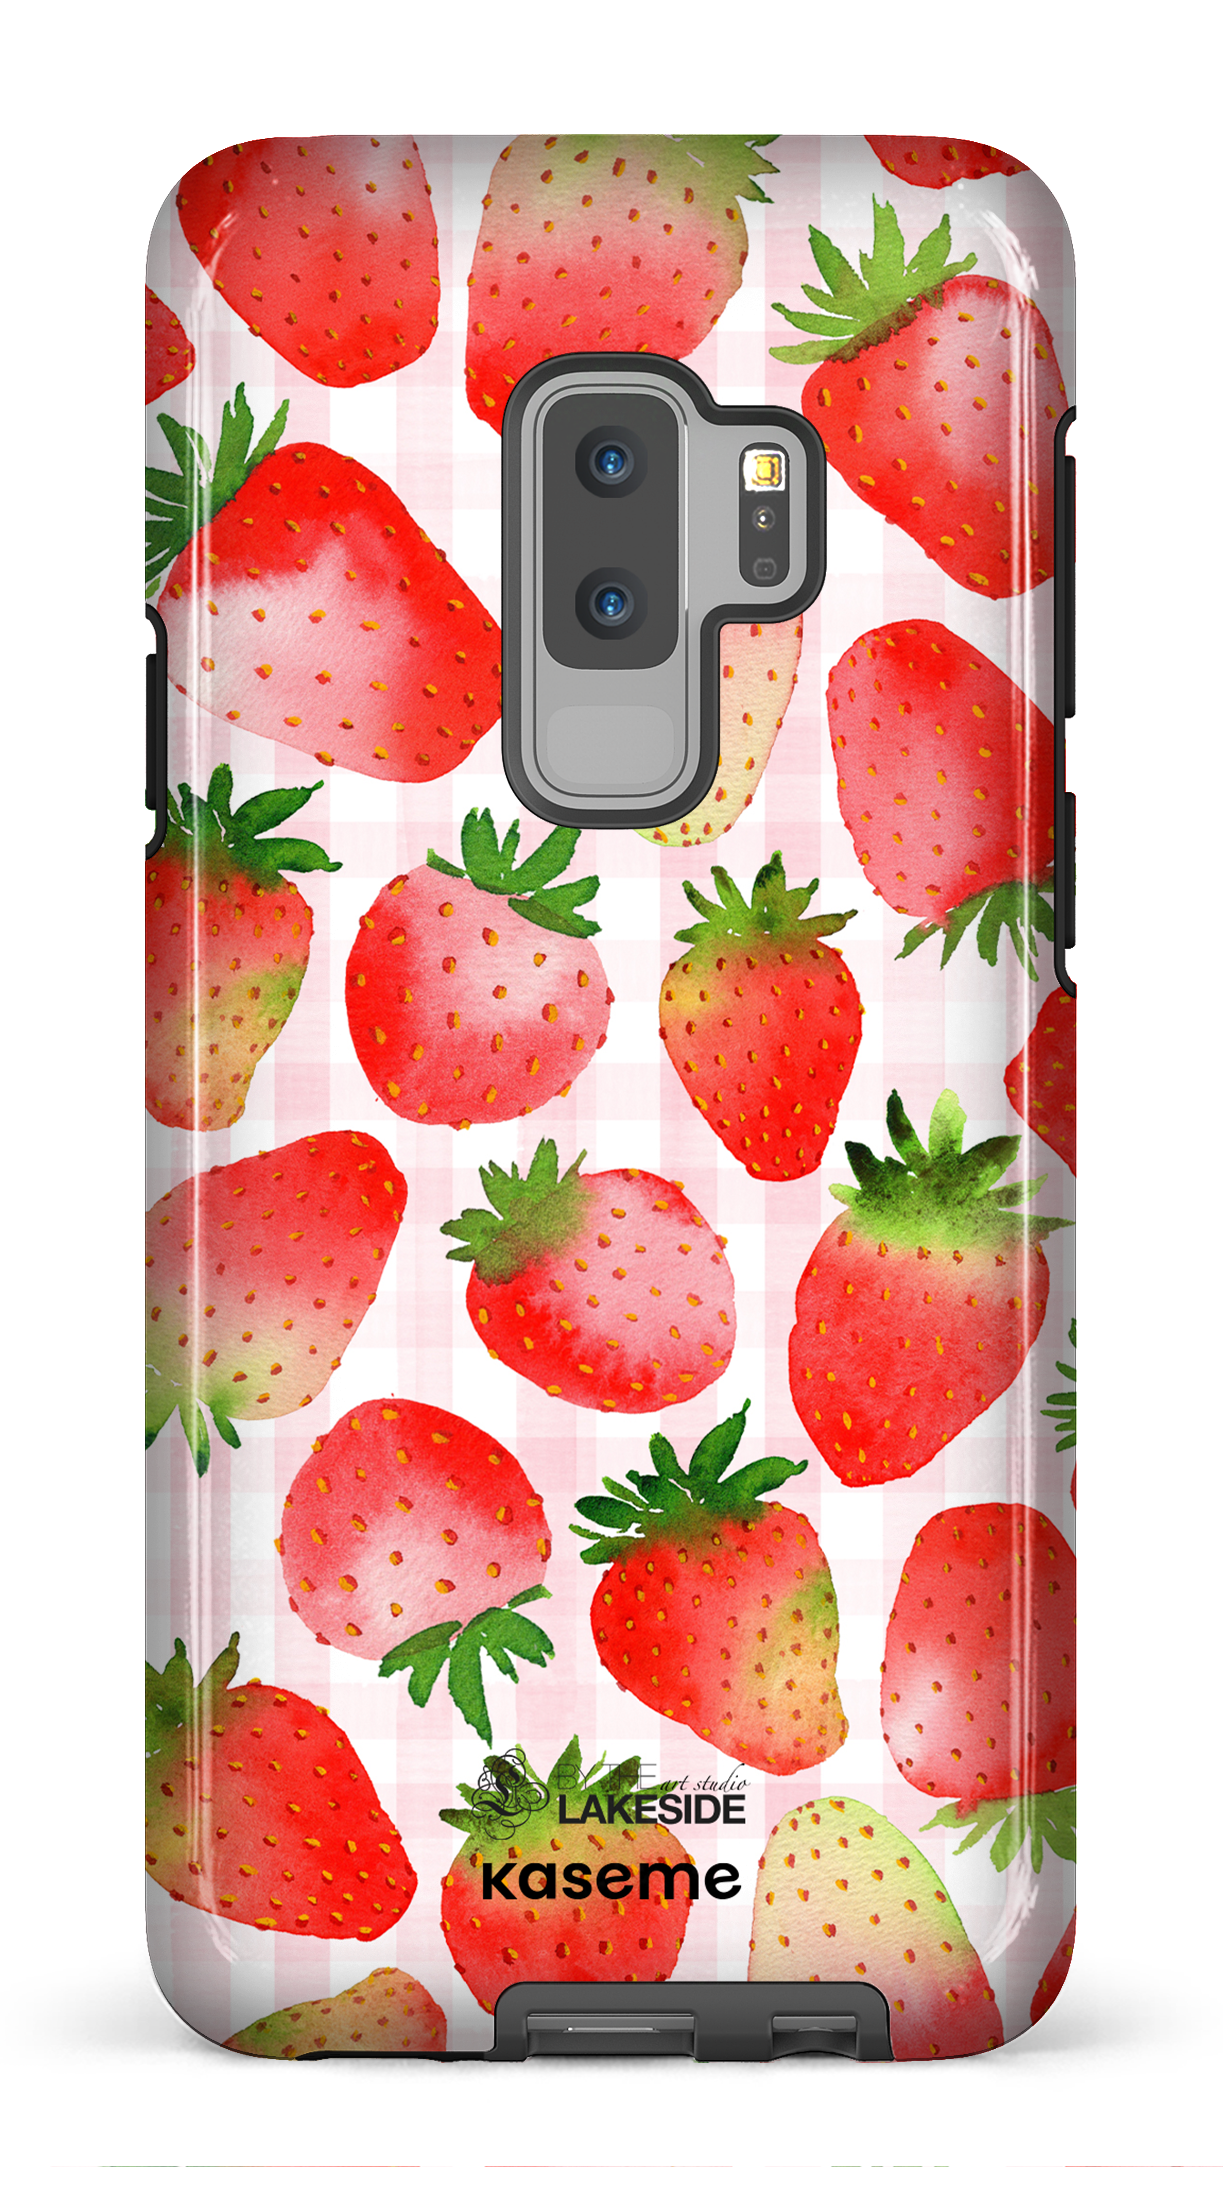 Strawberry Fields by Pooja Umrani - Galaxy S9 Plus